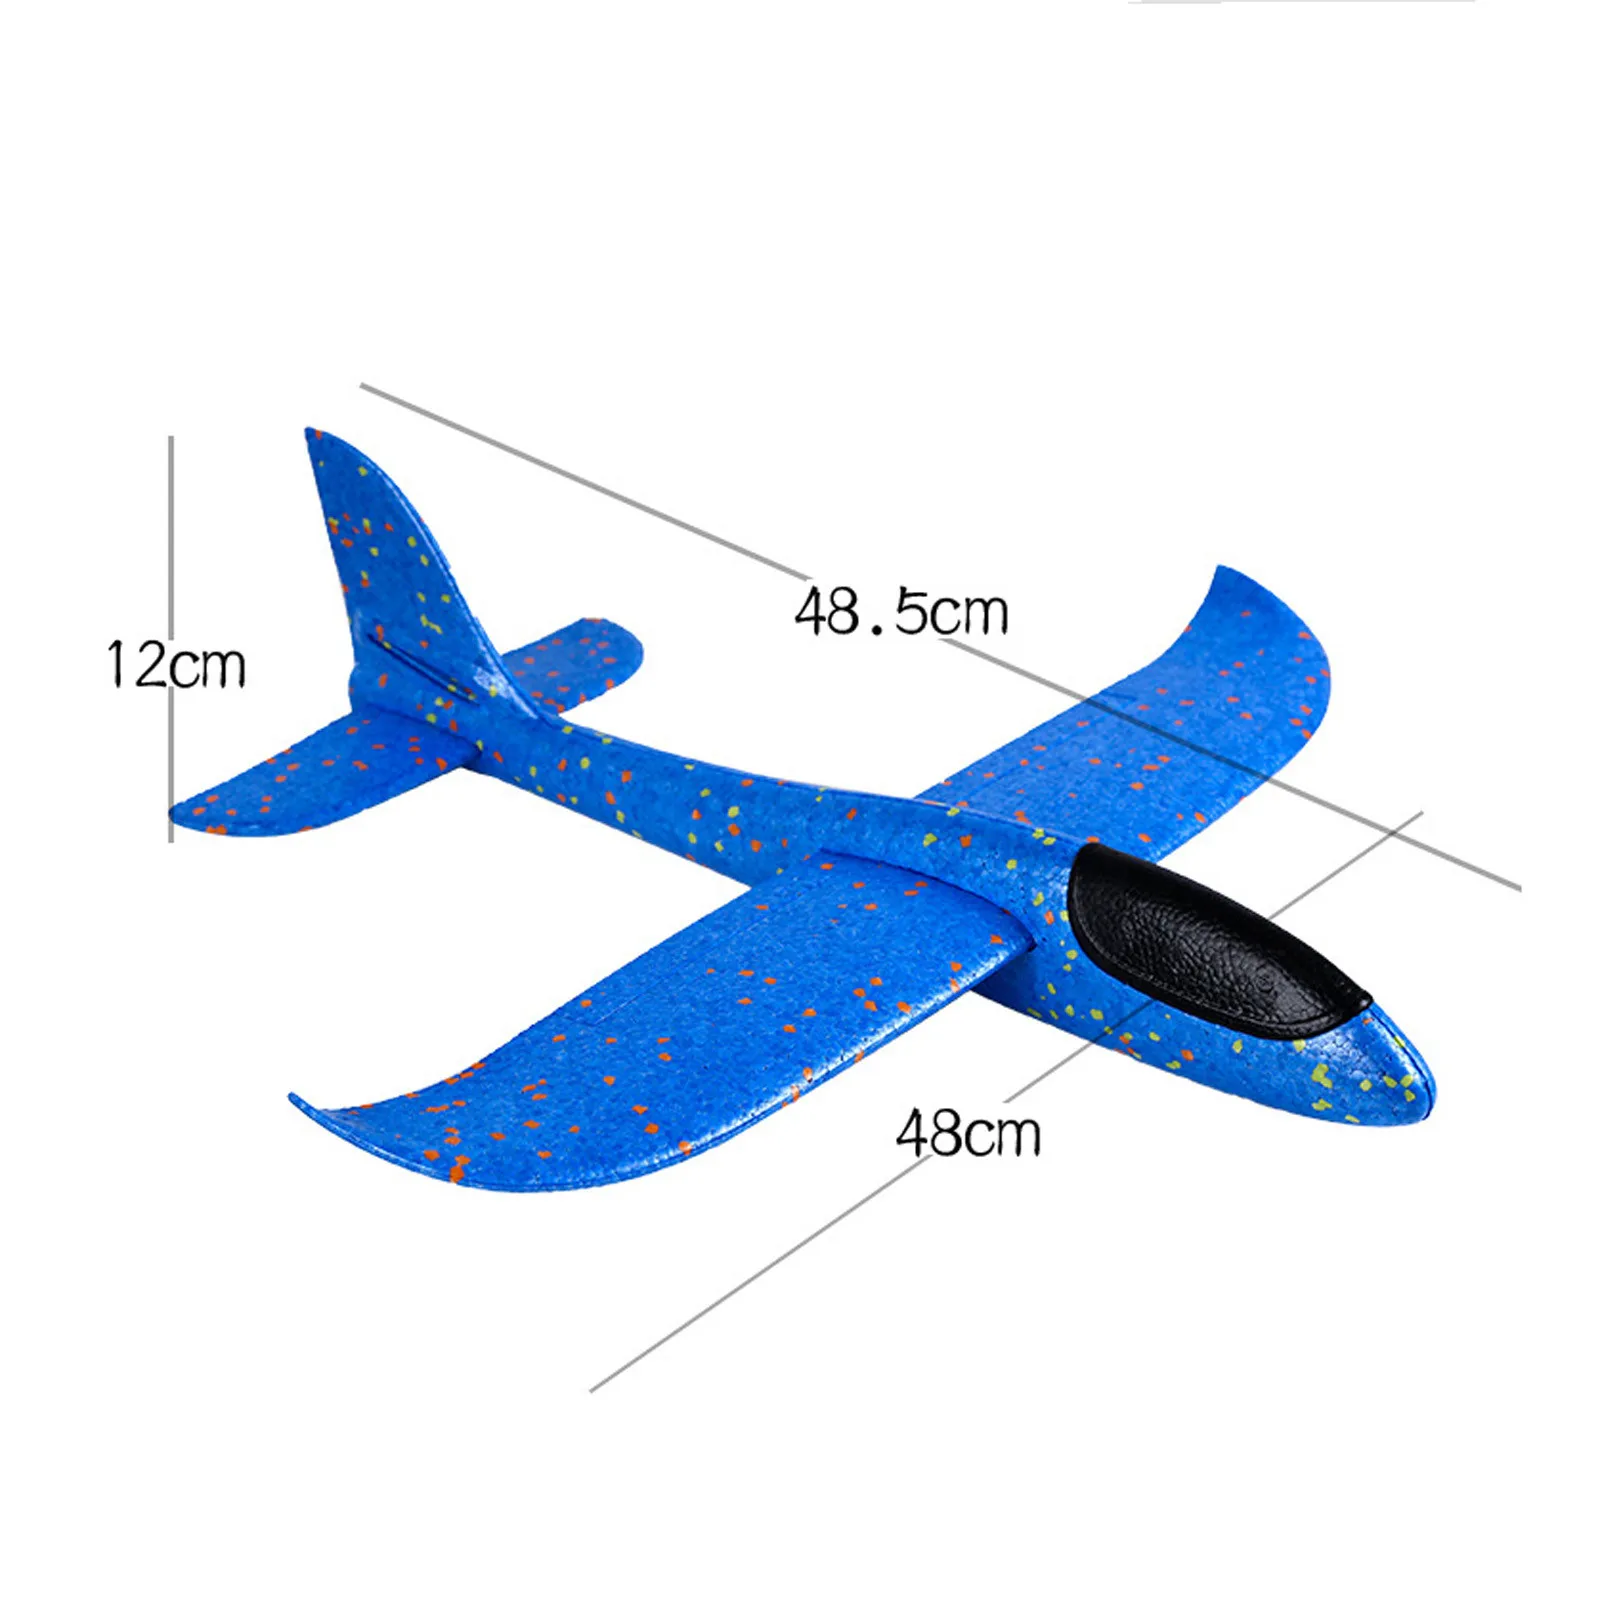 Lançamento Jogando Espuma Palne Modelo De Avião Planador De Avião Modelo De Avião Ao Ar Livre Diy Brinquedo Educativo Para As Crianças Do Avião Modelo